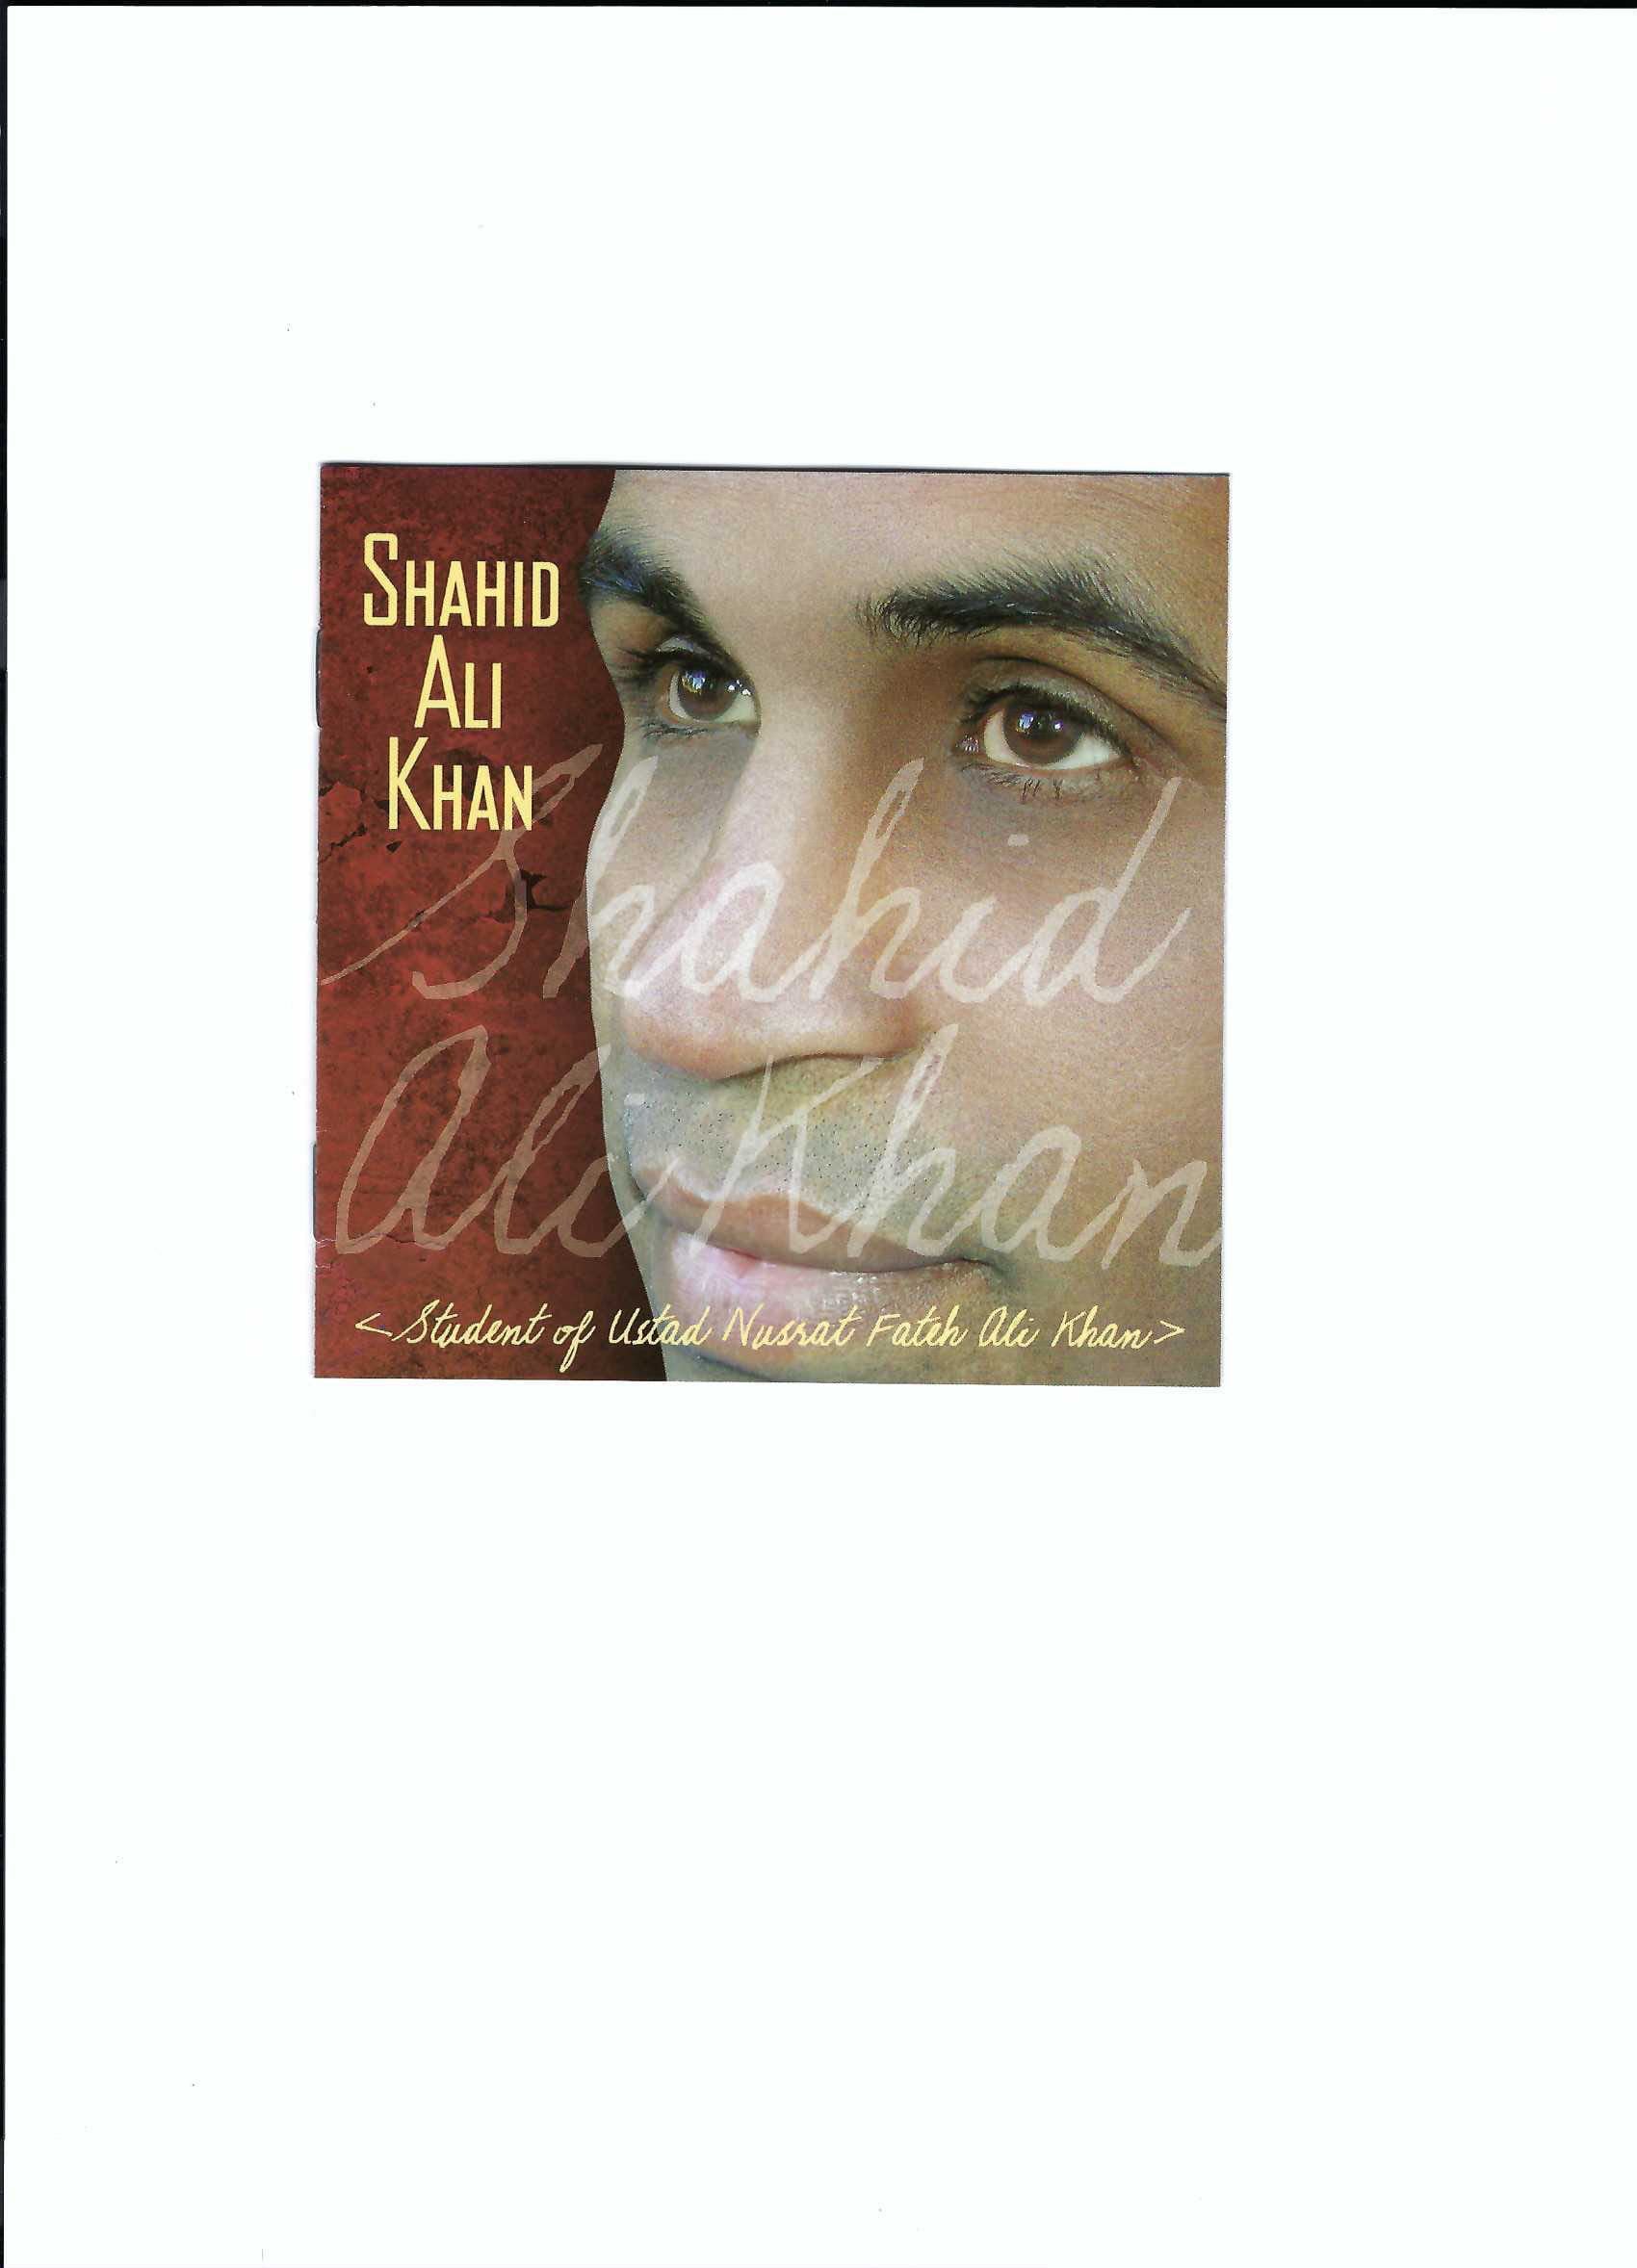 Shahid Ali Khan produced by Jack Lenz